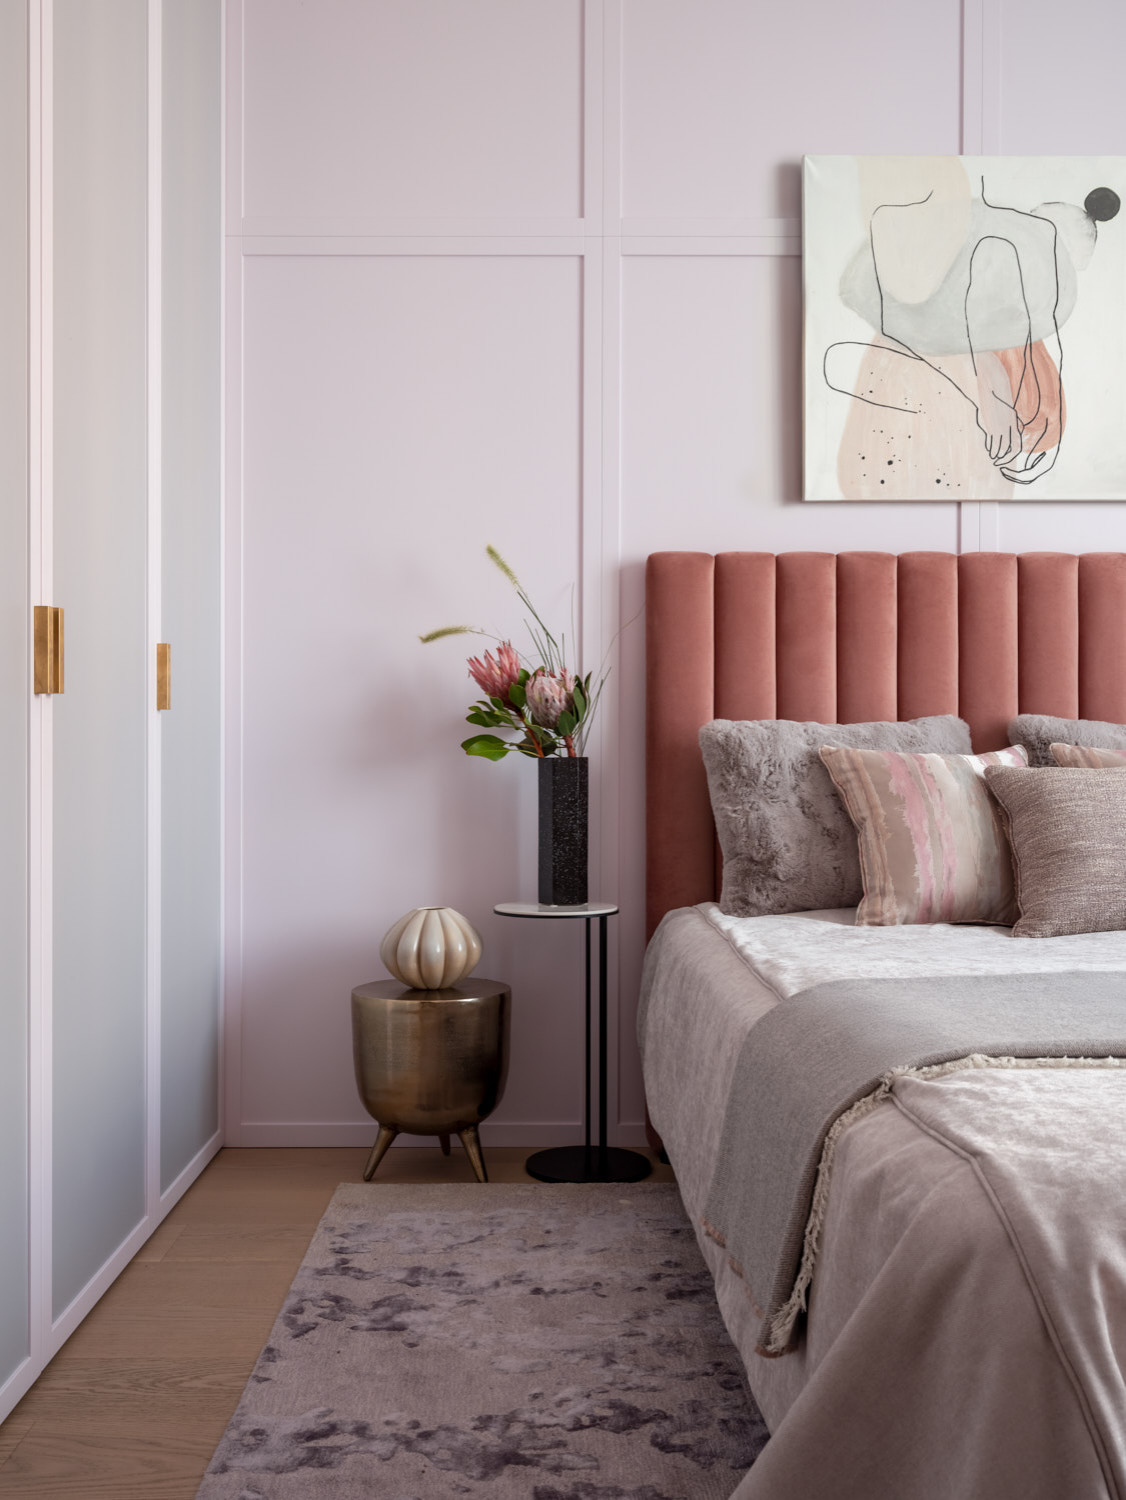 Сочетание цветов в интерьере спальни: 10 идеальных вариантов